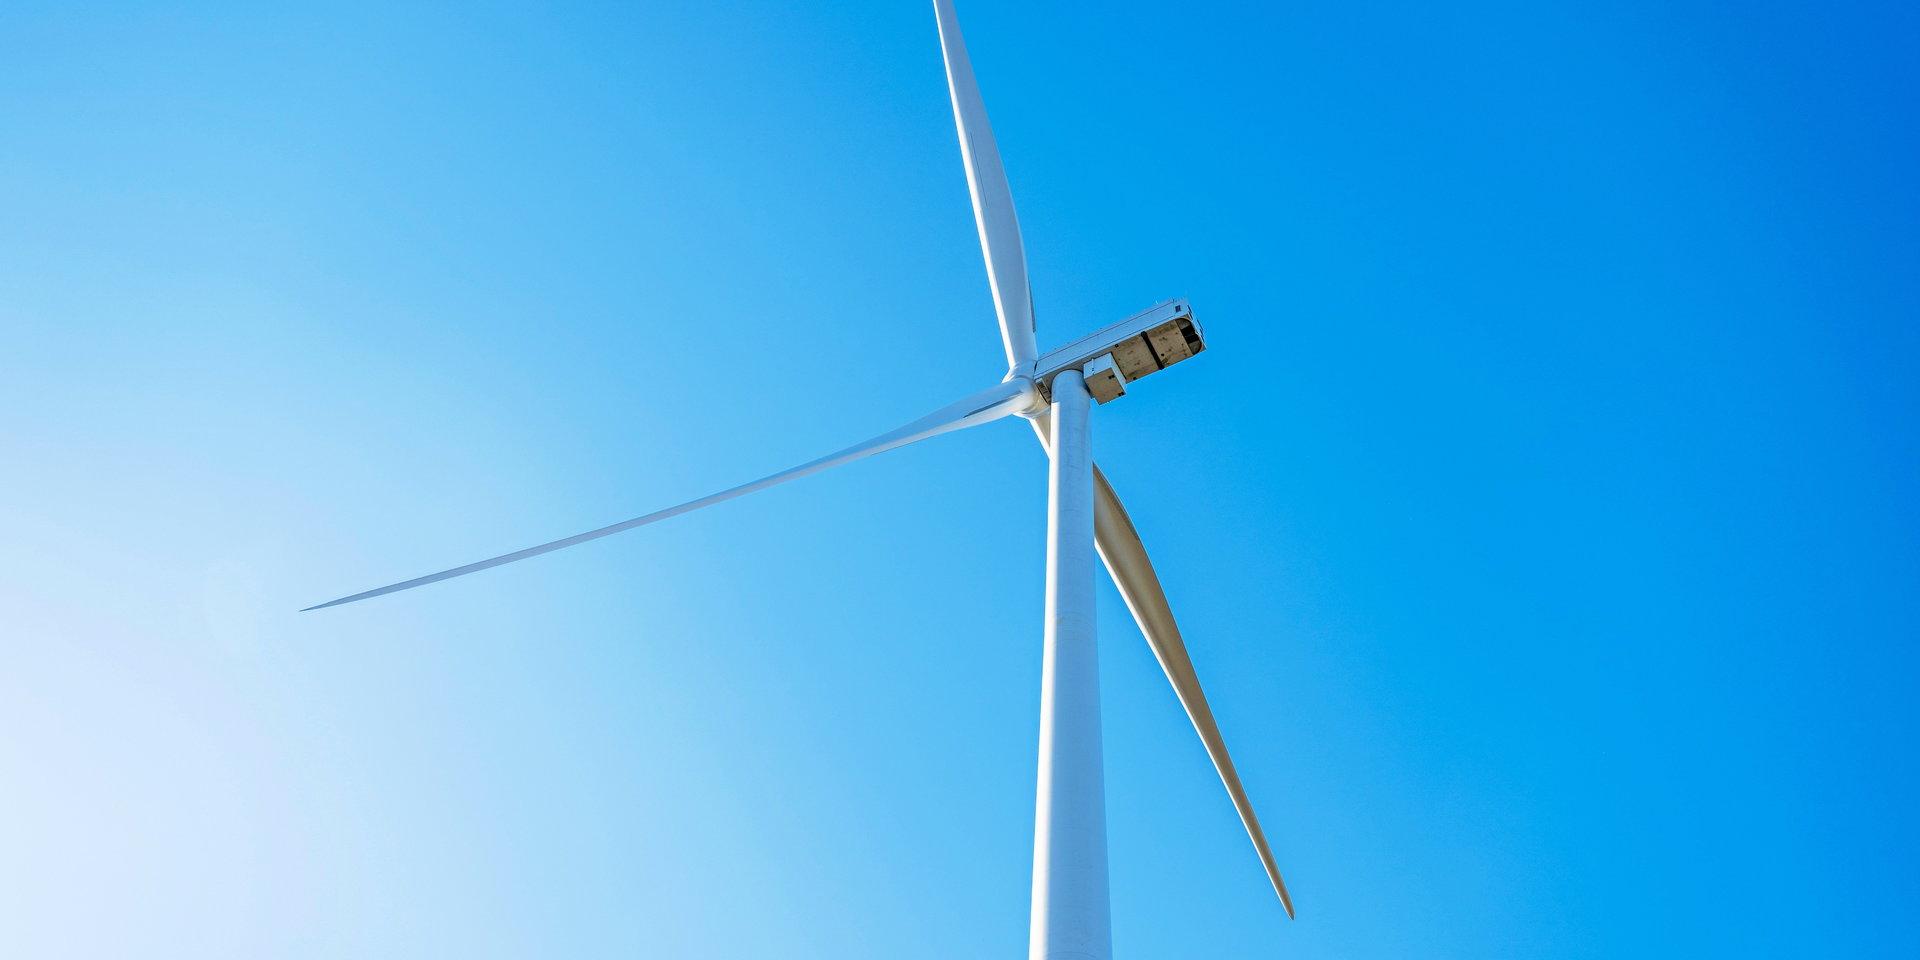 Miljöpartiet vill att kommunerna som satsar på vindkraft ska få ekonomiskt stöd. Även de som bor nära en vindkraftsetablering ska ersättas.